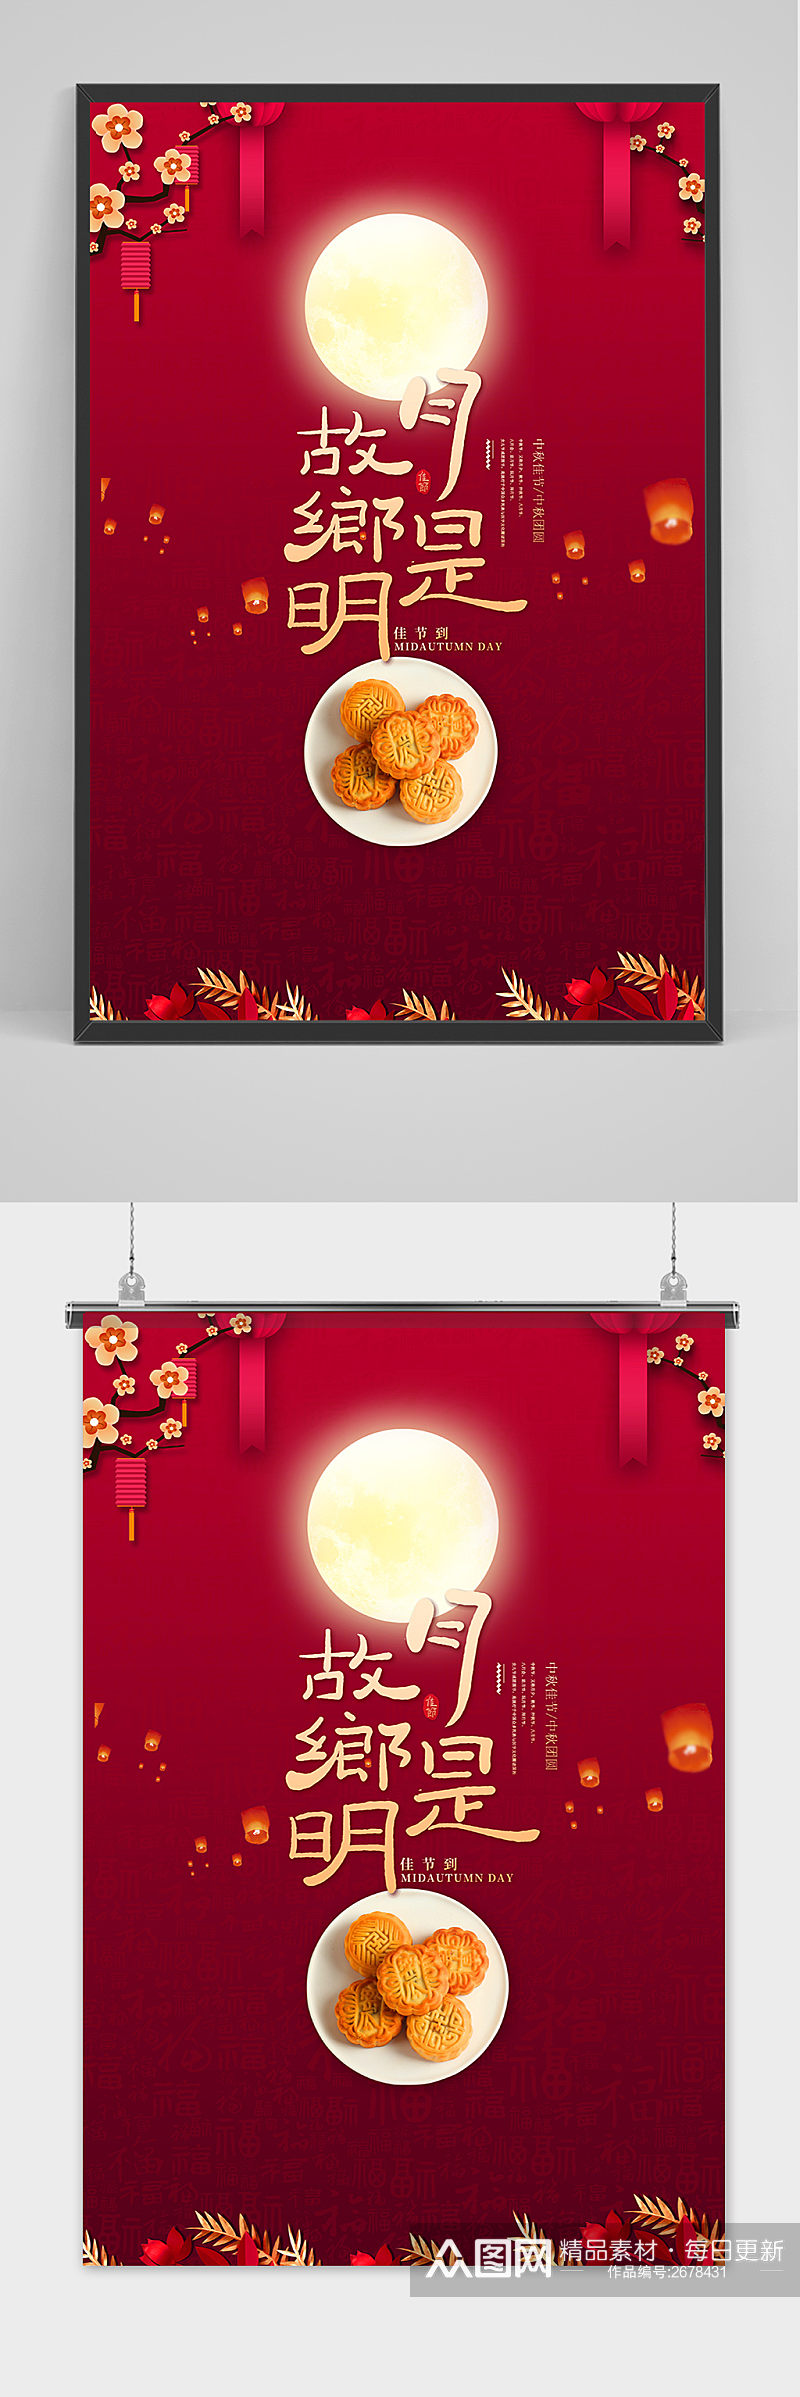 红色中国风唯美中秋节团圆海报素材